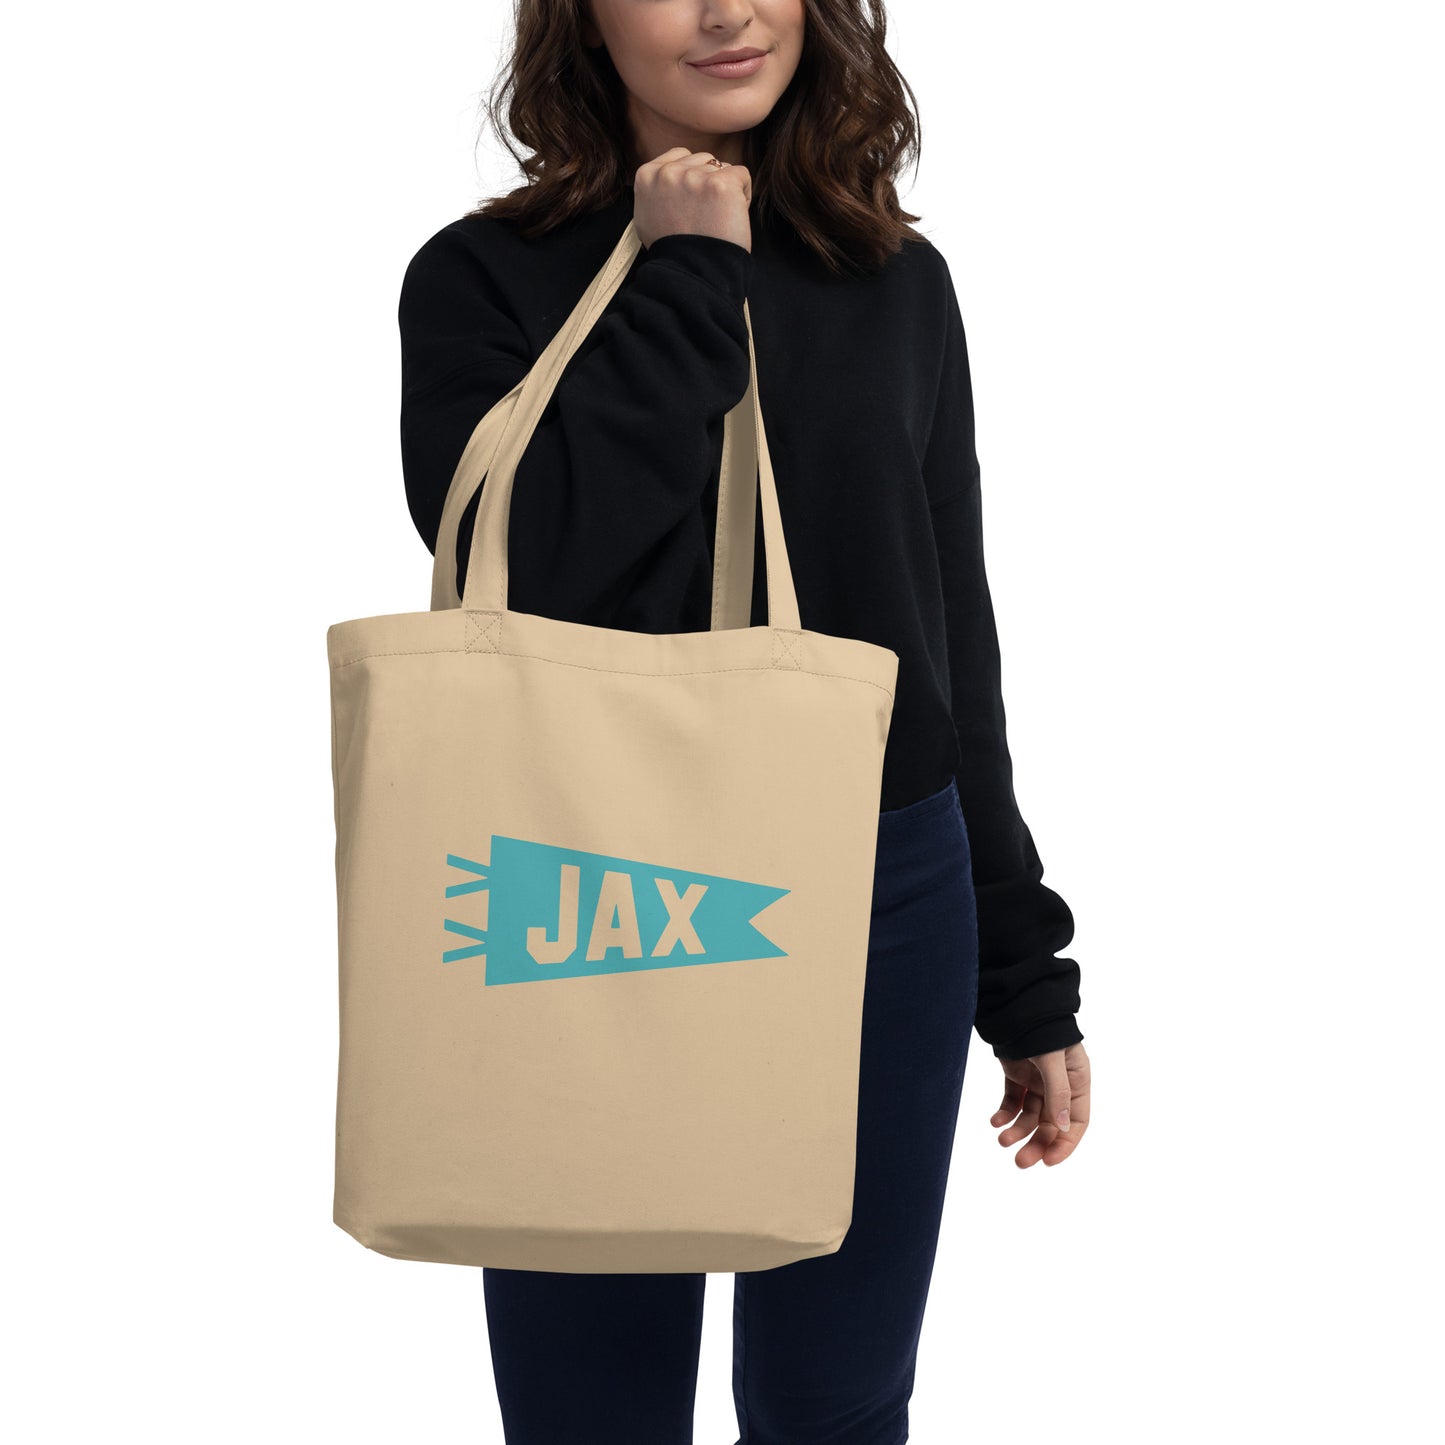 Cool Travel Gift Organic Tote Bag - Viking Blue • JAX Jacksonville • YHM Designs - Image 03